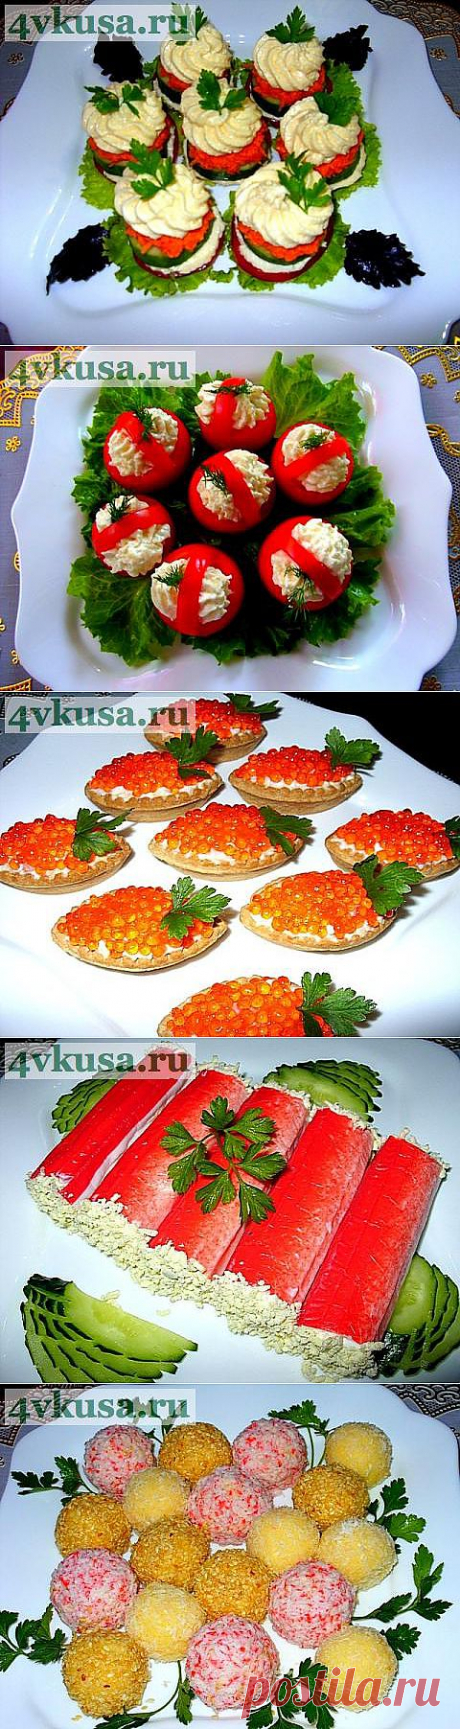 Вкусные закусочки | 4vkusa.ru